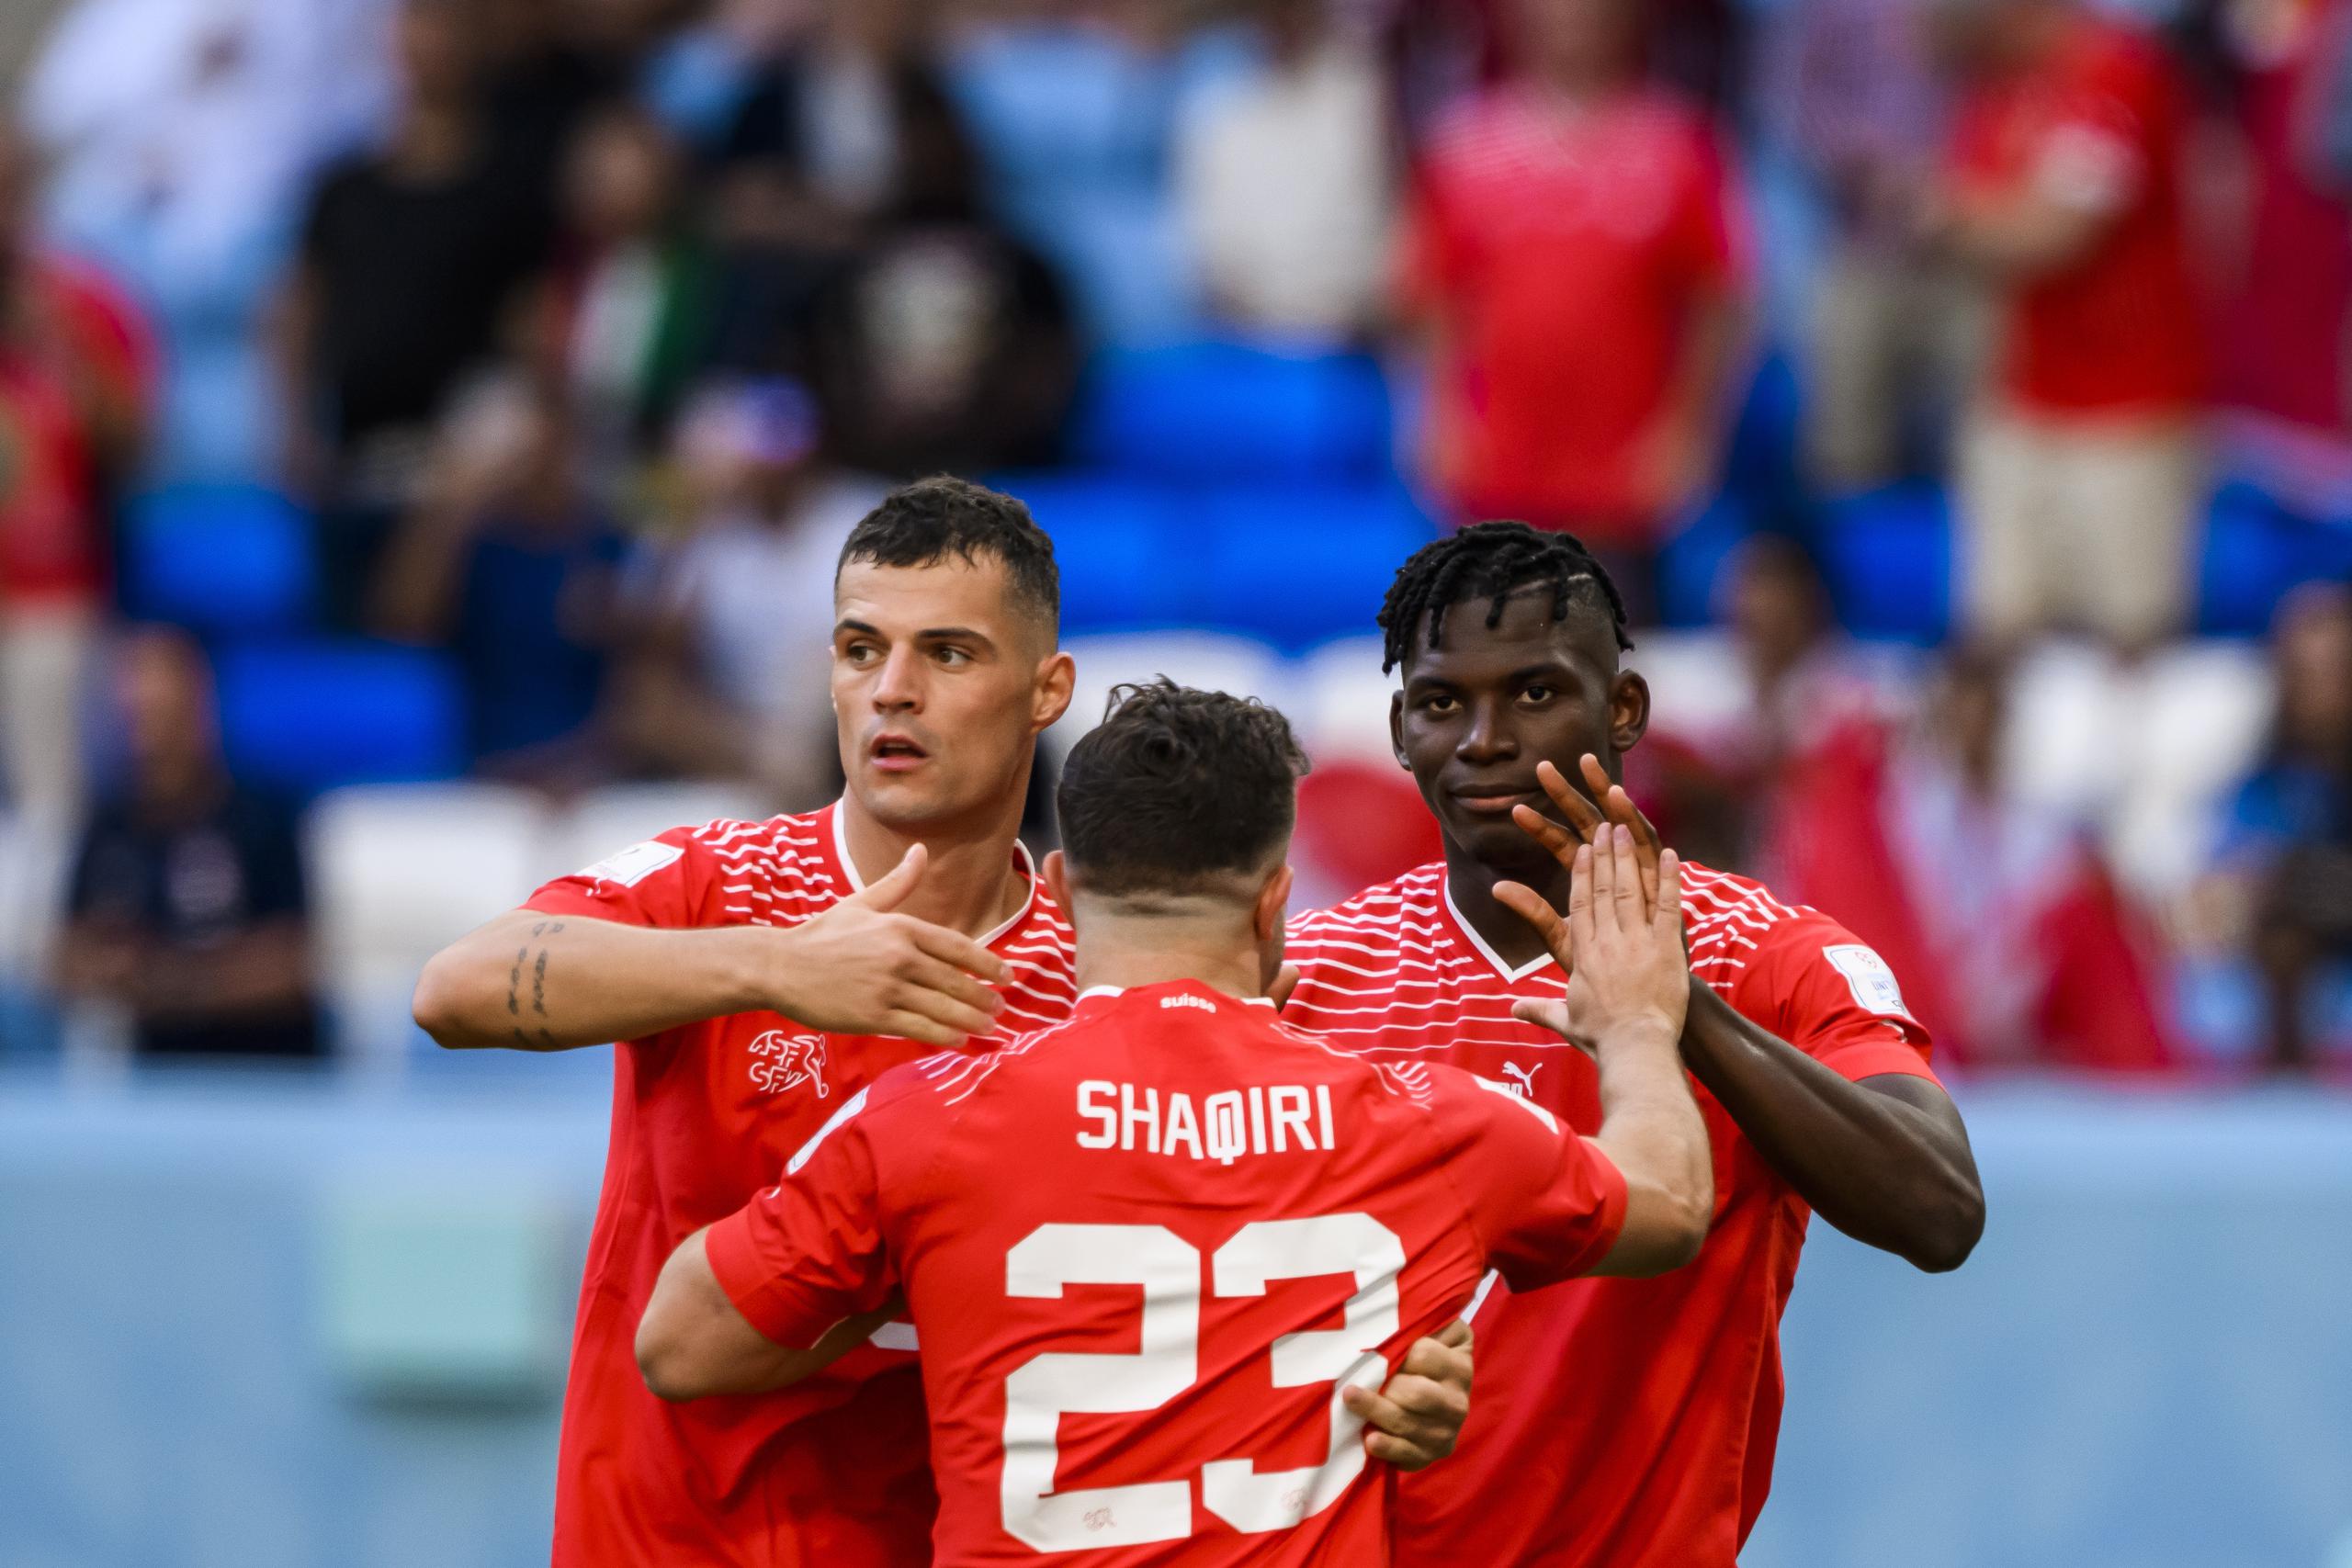 El camerunés narturalizado suizo Breel Embolo, a la derecha, celebra con respeto el gol que anotó contra su país de origen en el partido de madrugada de Qatar 2022 este jueves.